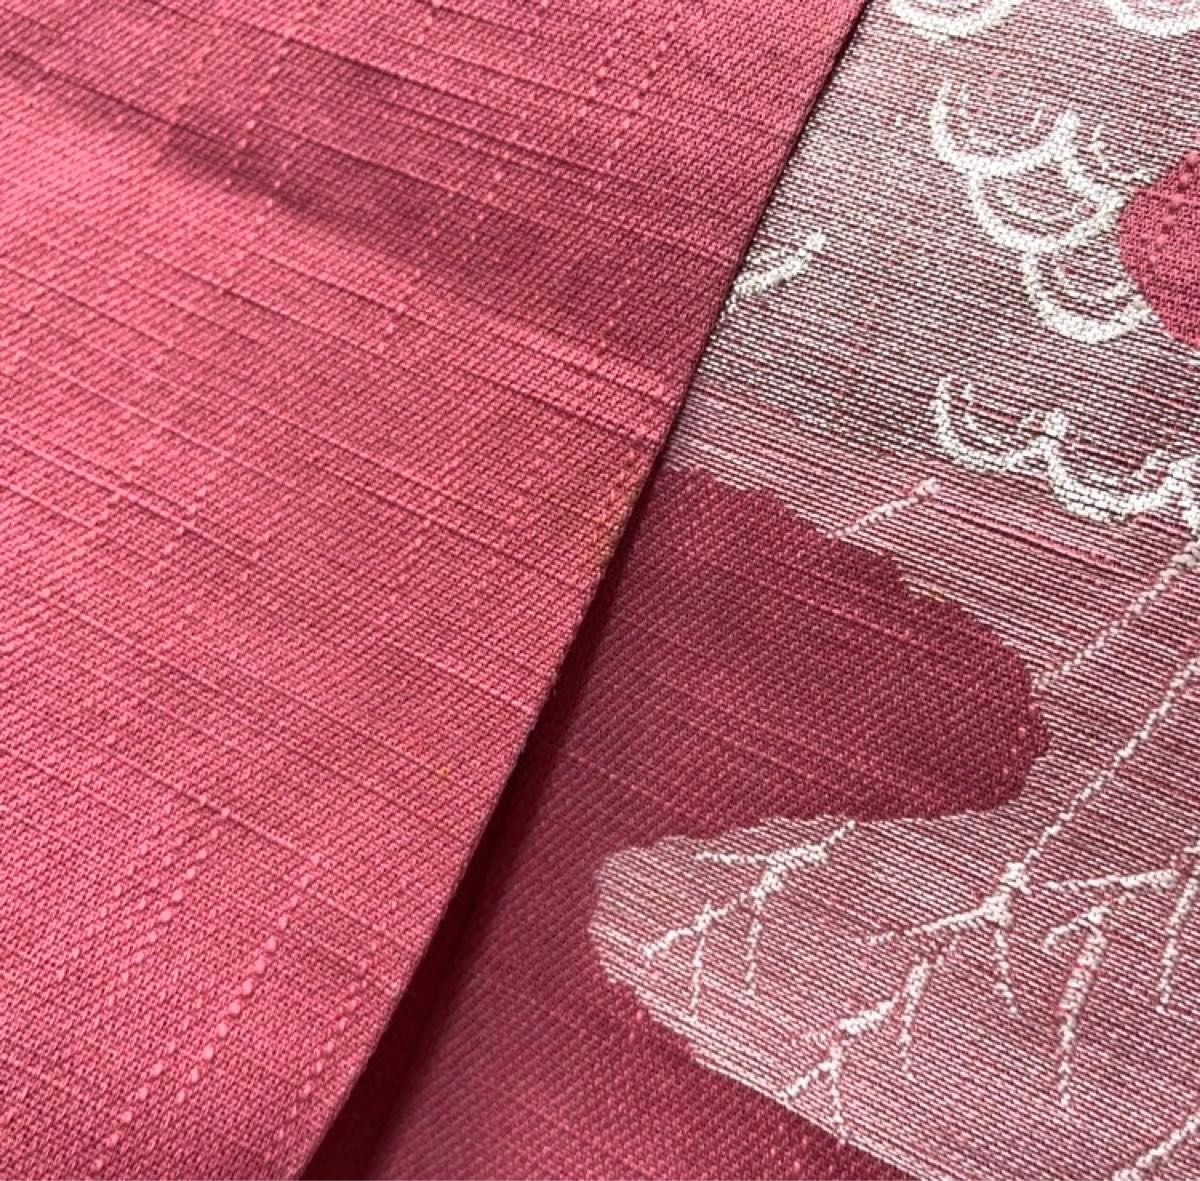 【344】名古屋帯 名古屋仕立て ピンク 着物・小紋・紬やリメイクなどに